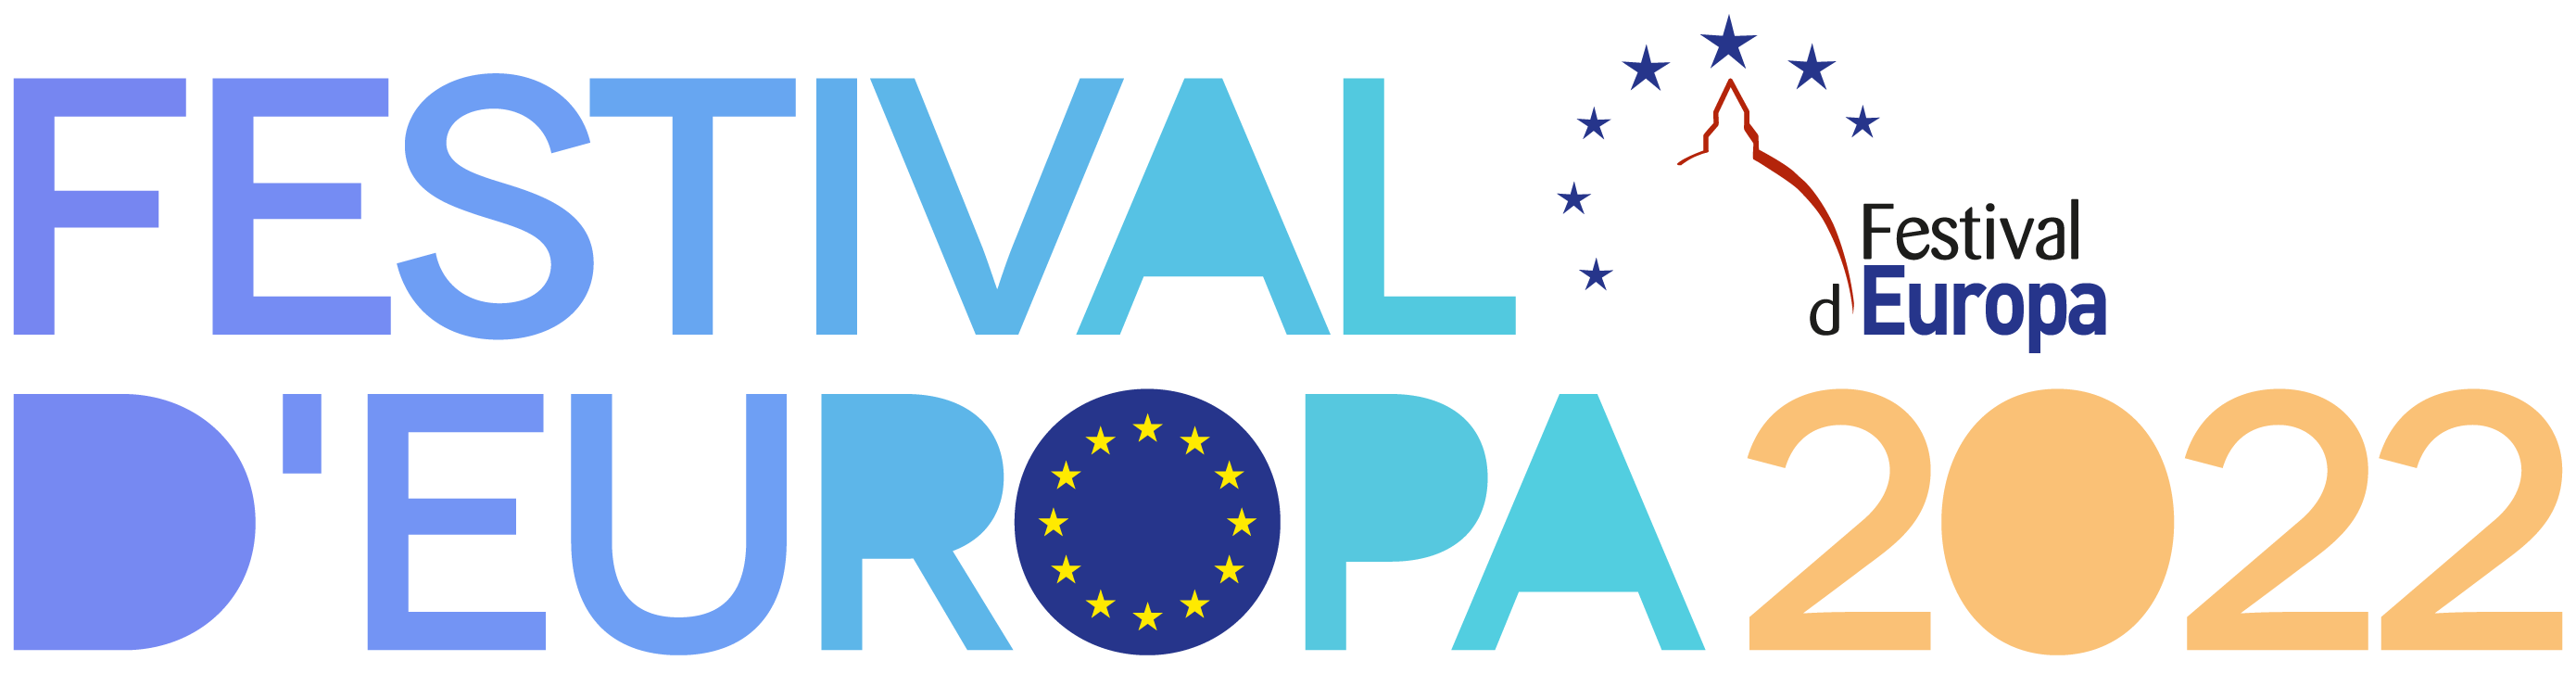 Festival d'Europa 2022